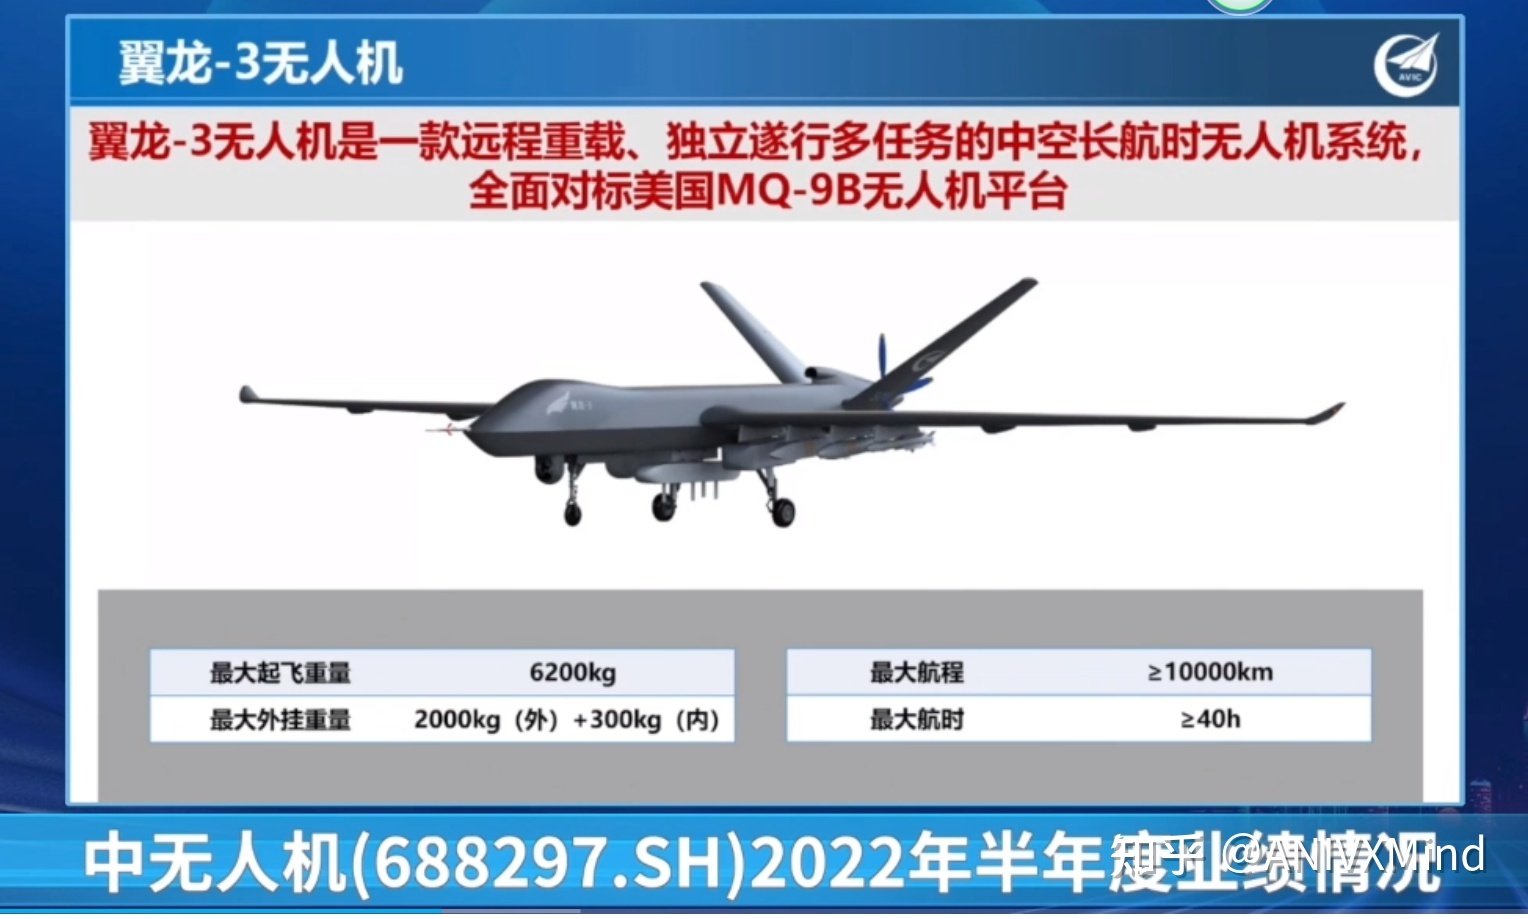 China stellt die Aufklärungsdrohne Wing Loong 3 vor, ein Konkurrent der MQ-9B SkyGuardian, mit einer Reichweite von 10.000 km und PL-10-Raketen-2